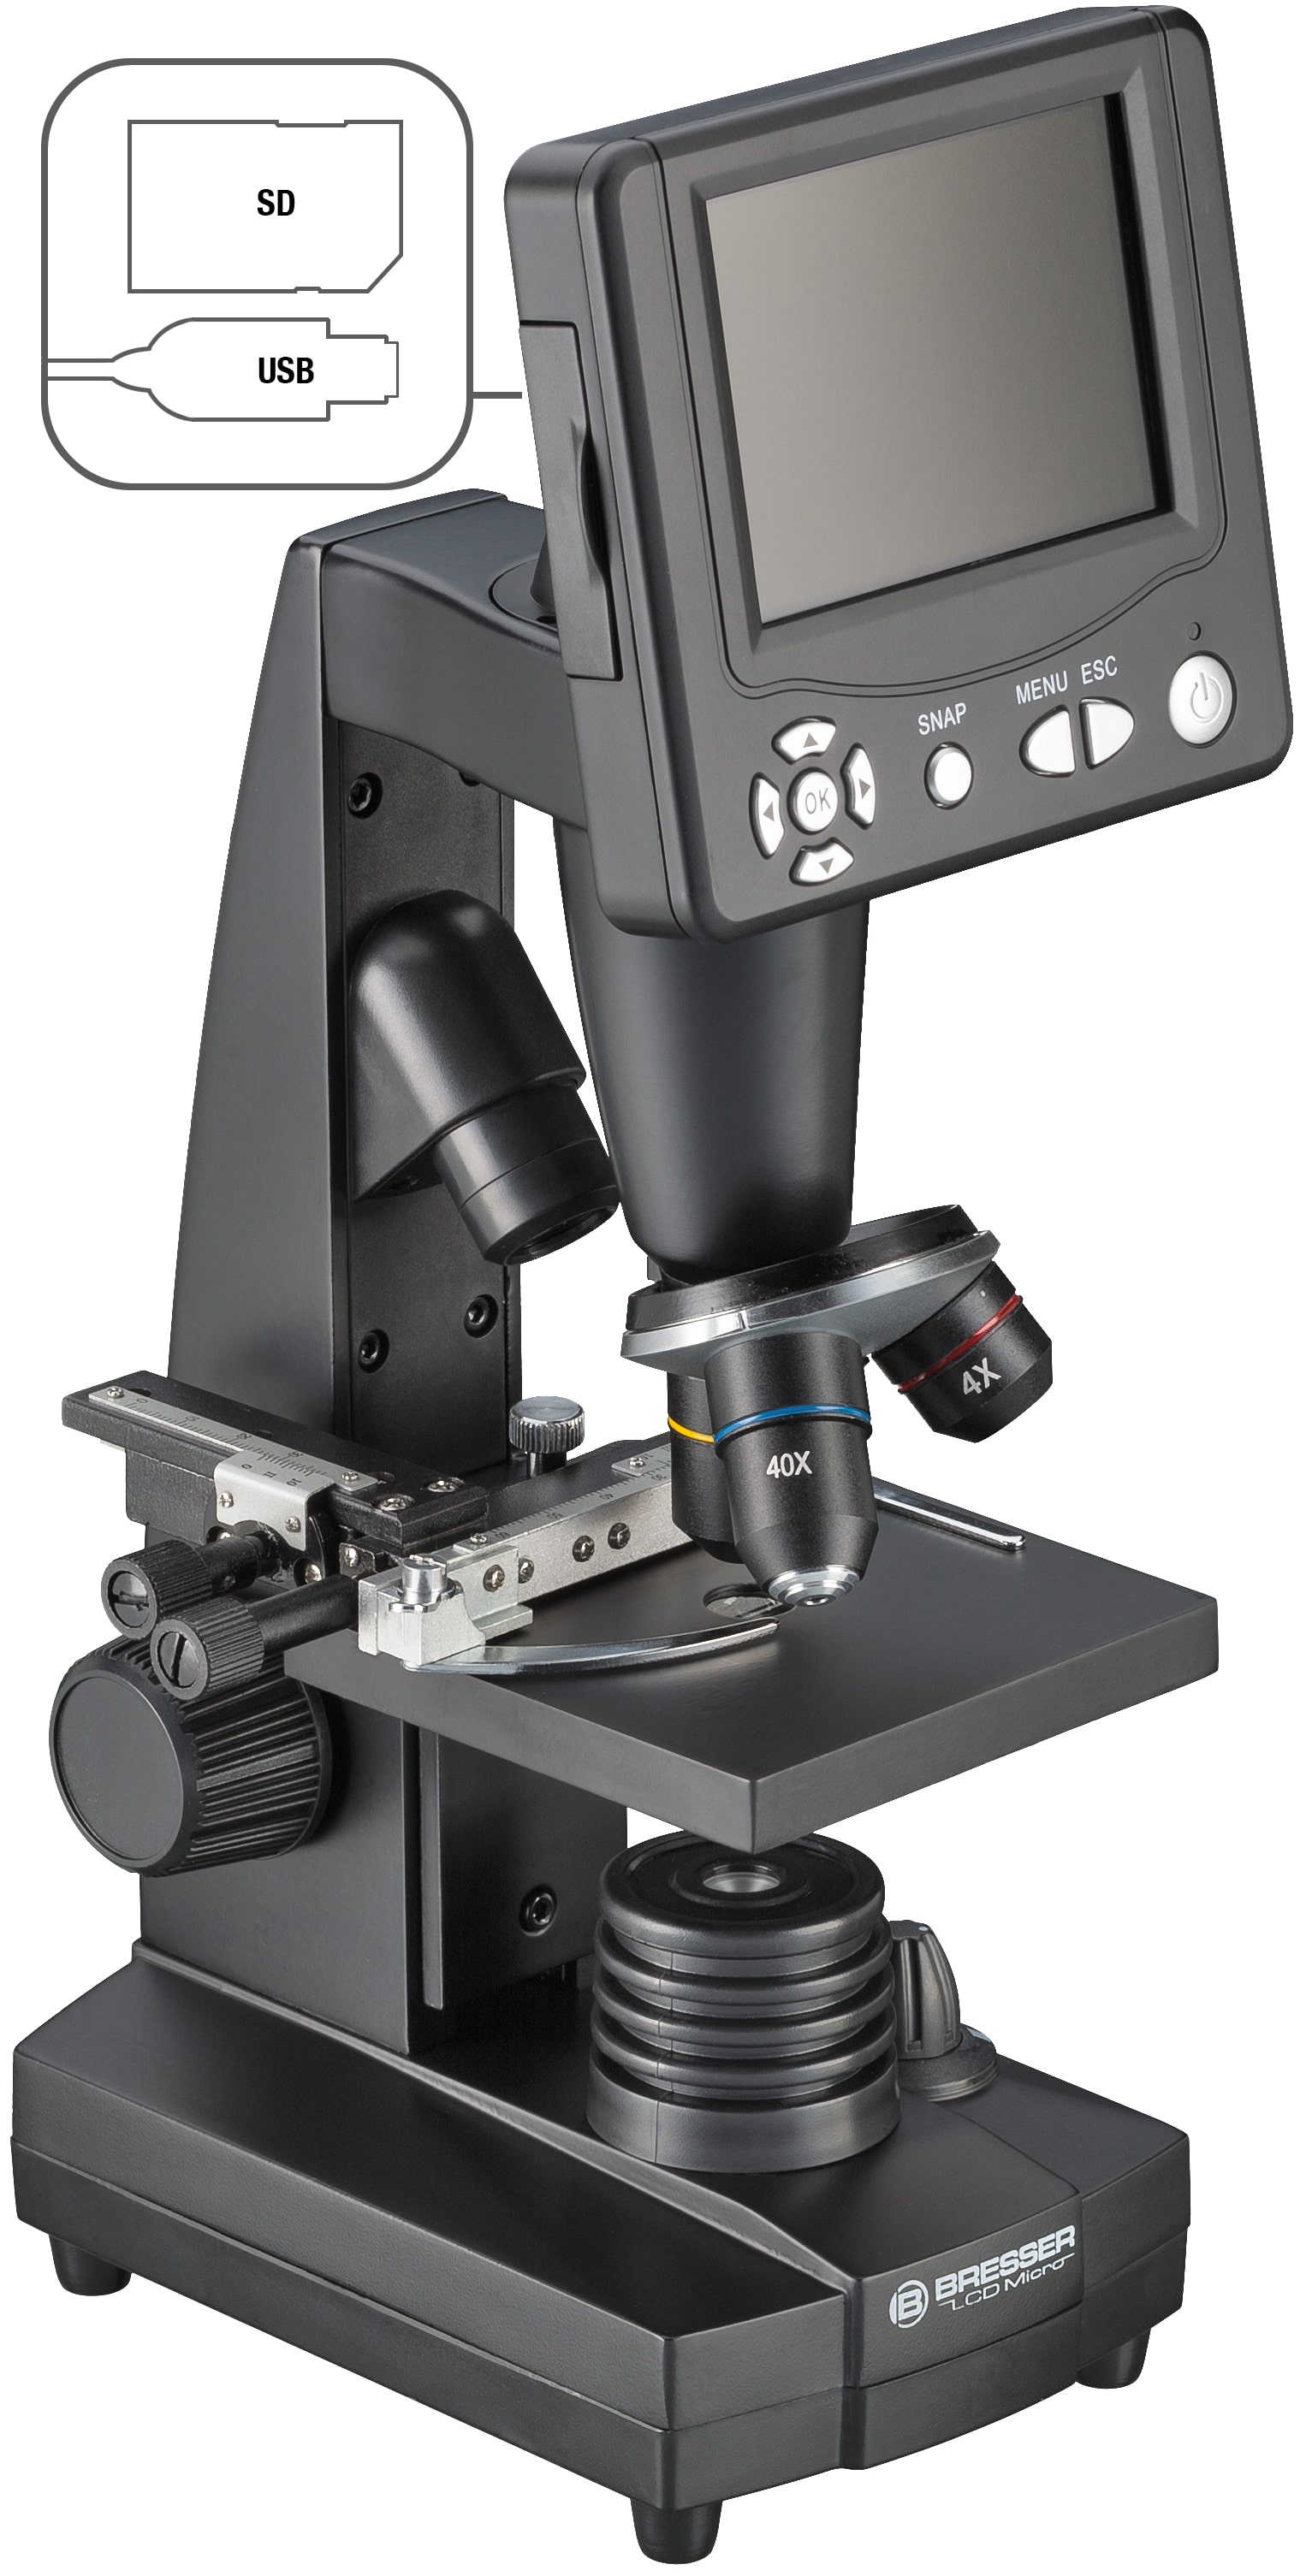   Grazie al suo schermo integrato, con il microscopio LCD Bresser possono osservare anche più persone contemporaneamente.  